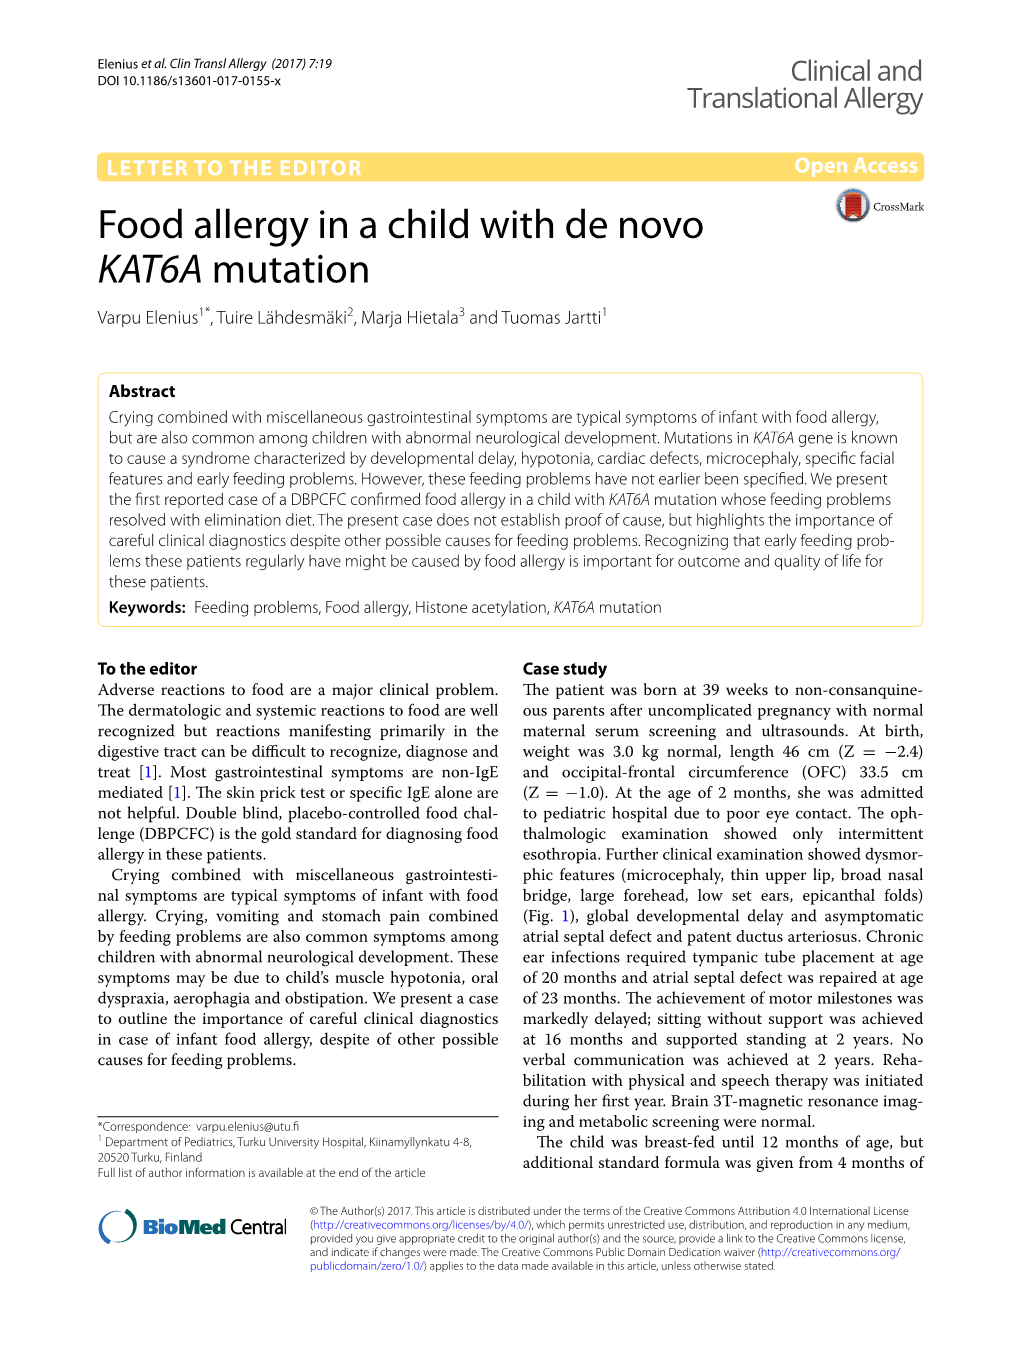 Food Allergy in a Child with De Novo KAT6A Mutation Varpu Elenius1*, Tuire Lähdesmäki2, Marja Hietala3 and Tuomas Jartti1